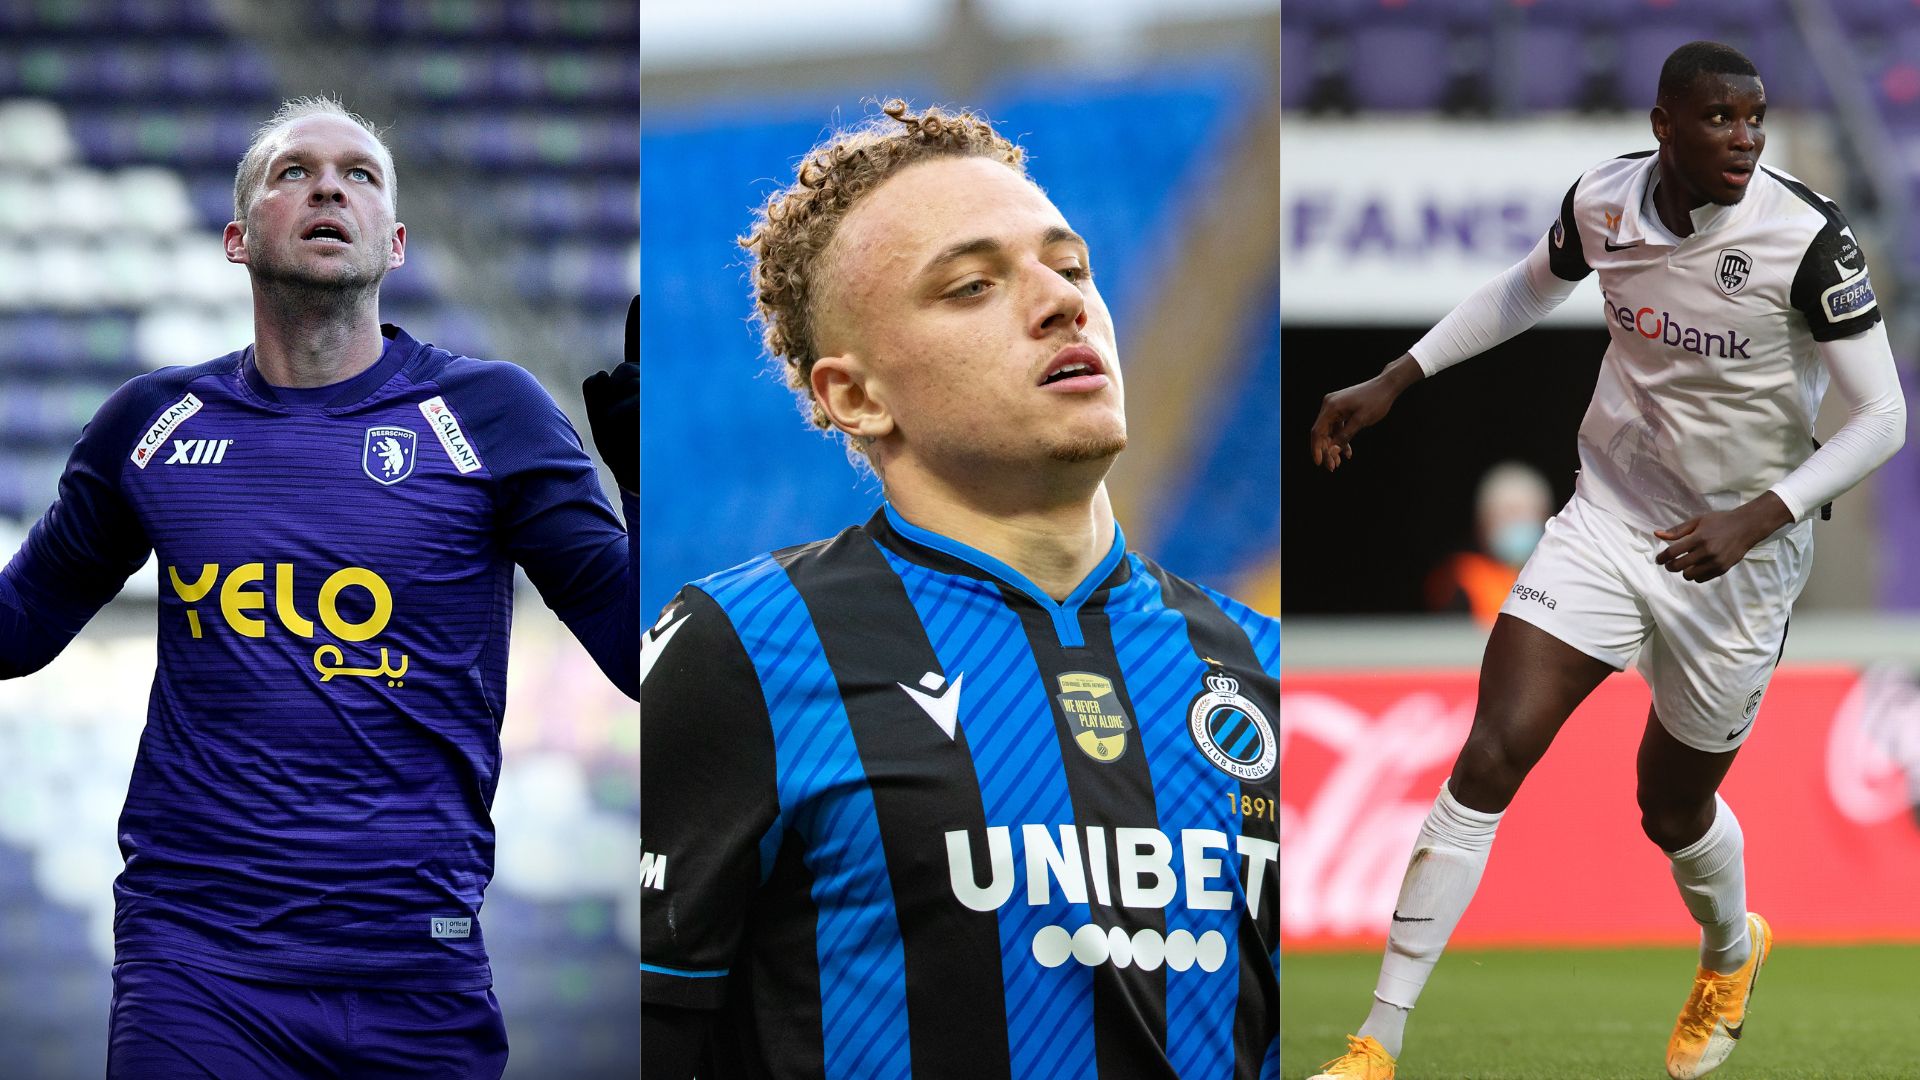 Qui de ces trois joueurs remportera le titre de footballeur de l’année ?